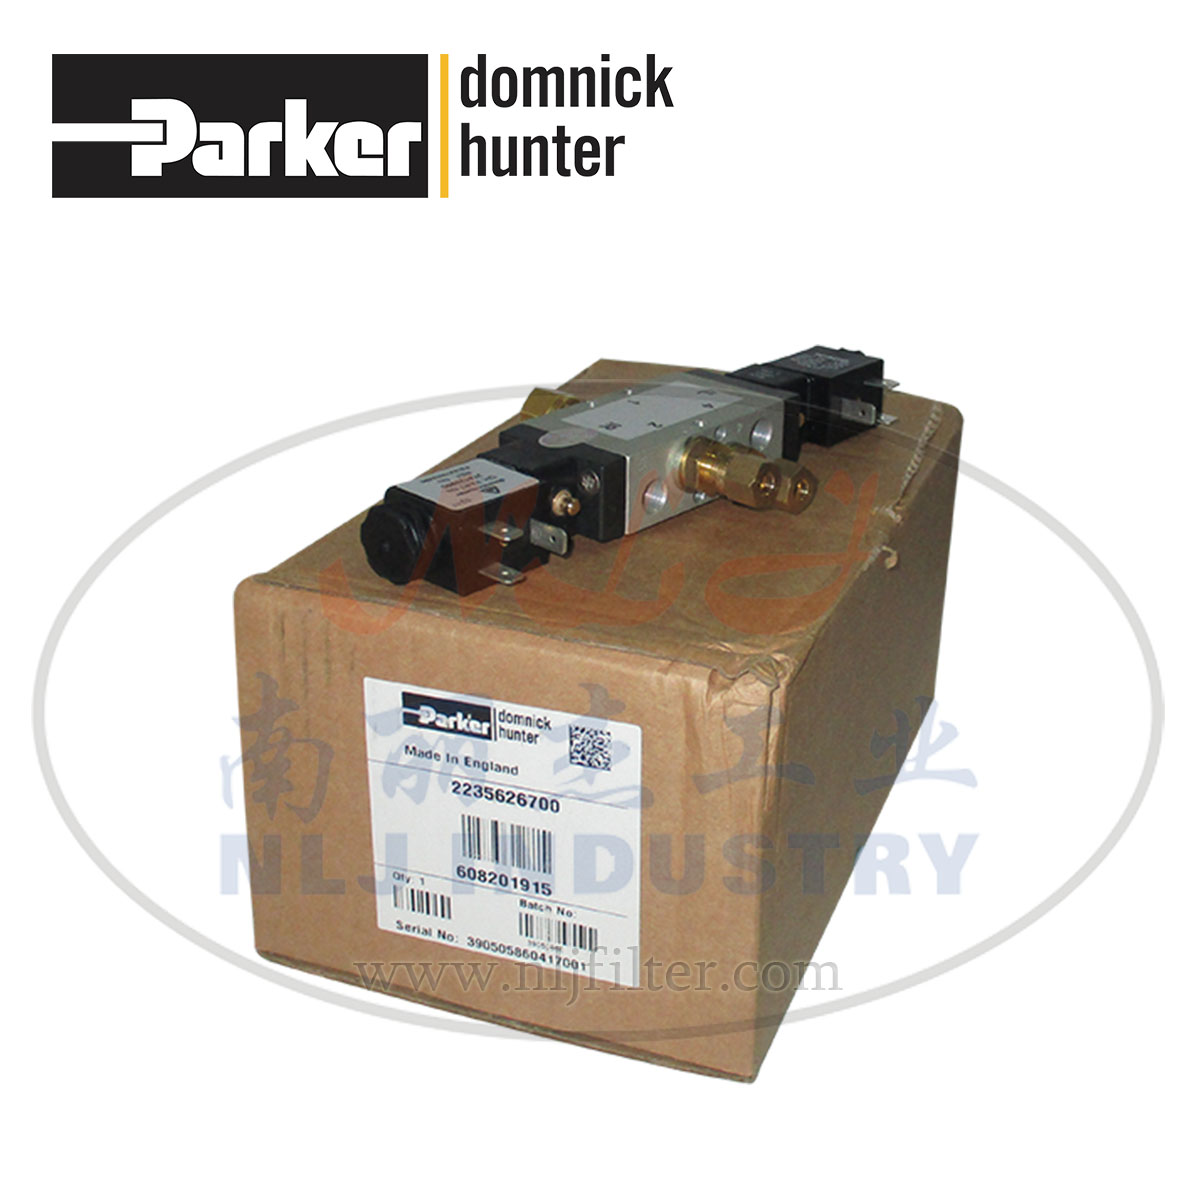 Parker(ɿ)domnick hunter˺·608201915